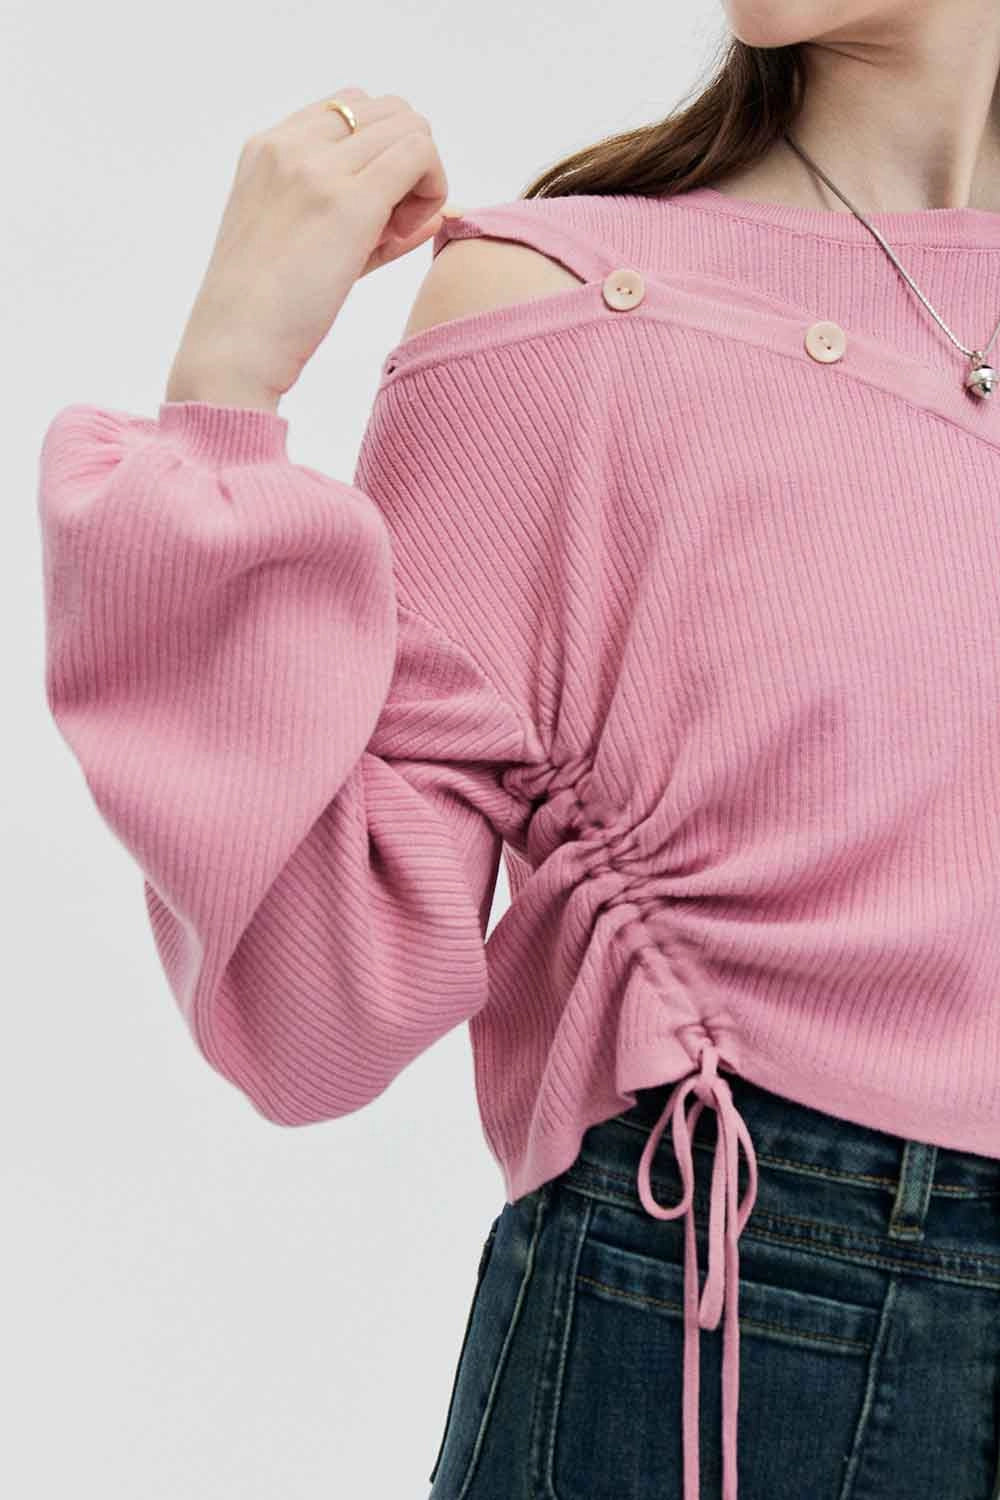 비대칭 컷아웃과 사이드 타이 디테일이 돋보이는 여성용 시크 니트 스웨터